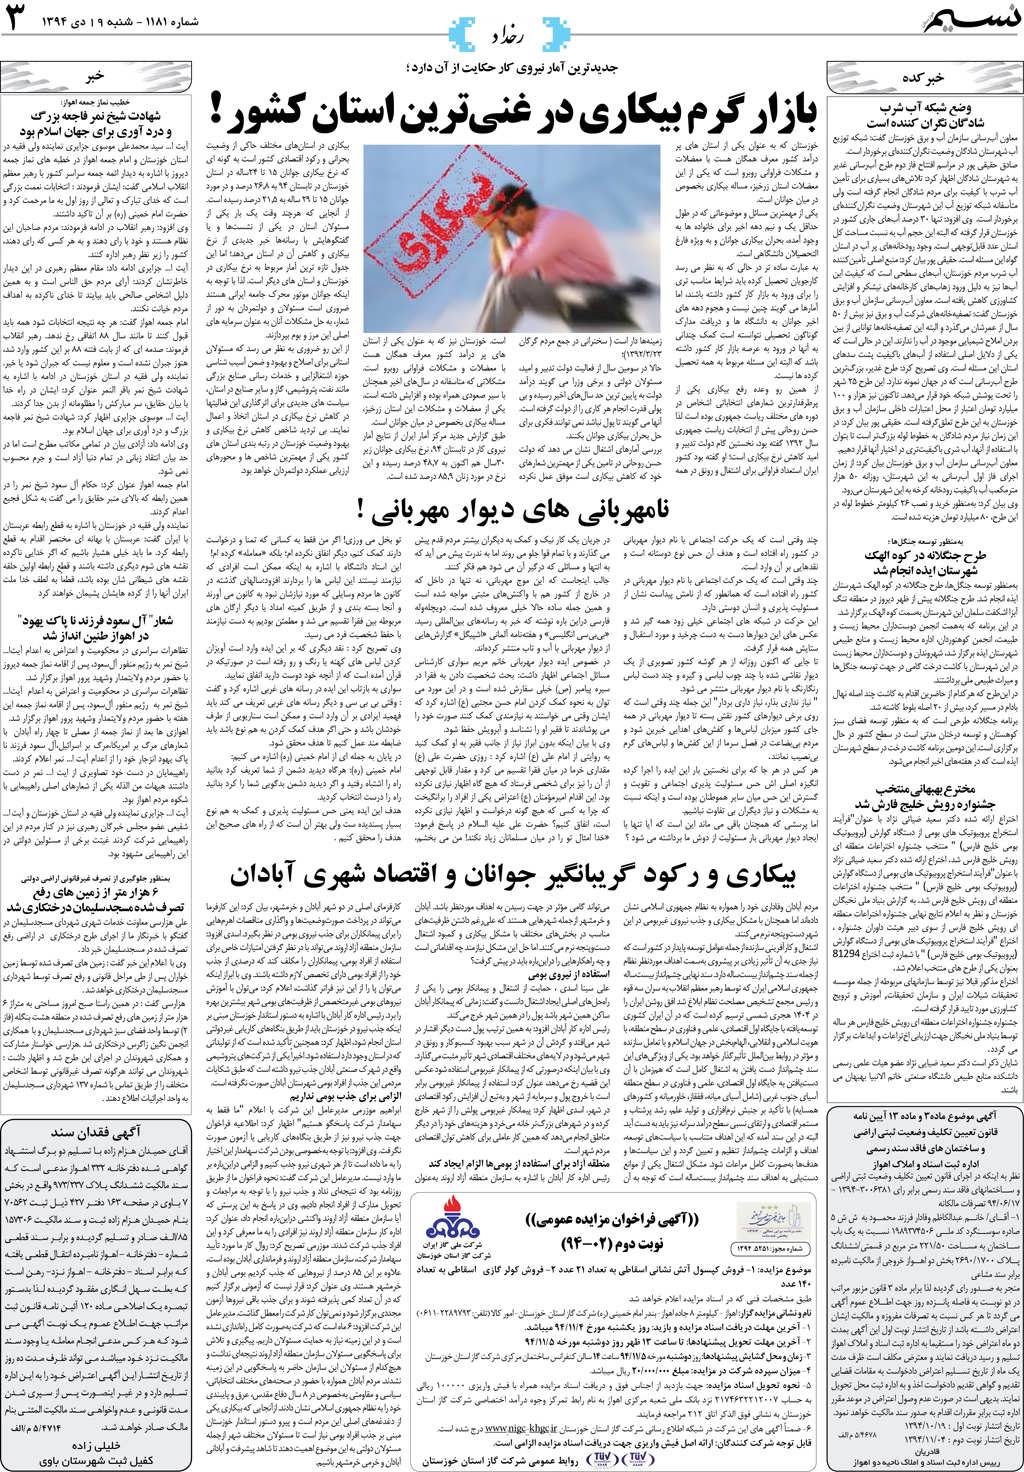 صفحه رخداد روزنامه نسیم شماره 1181